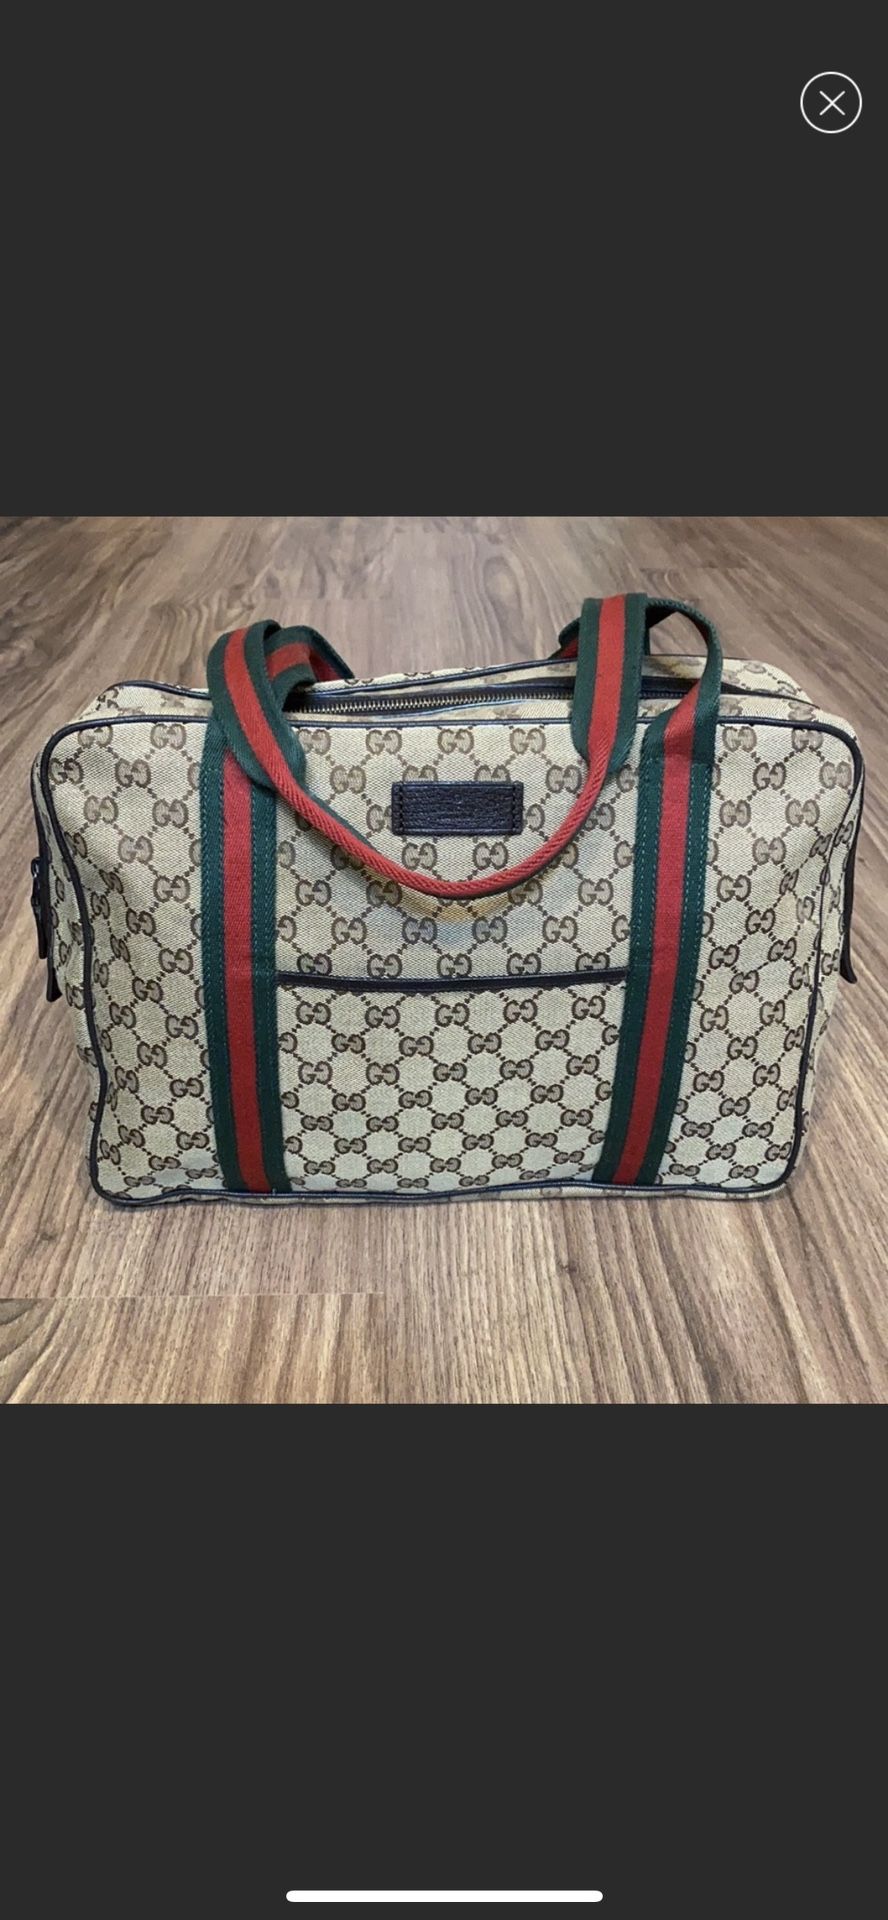 Authentic Gucci Handbag Travel Bag Computer Bag